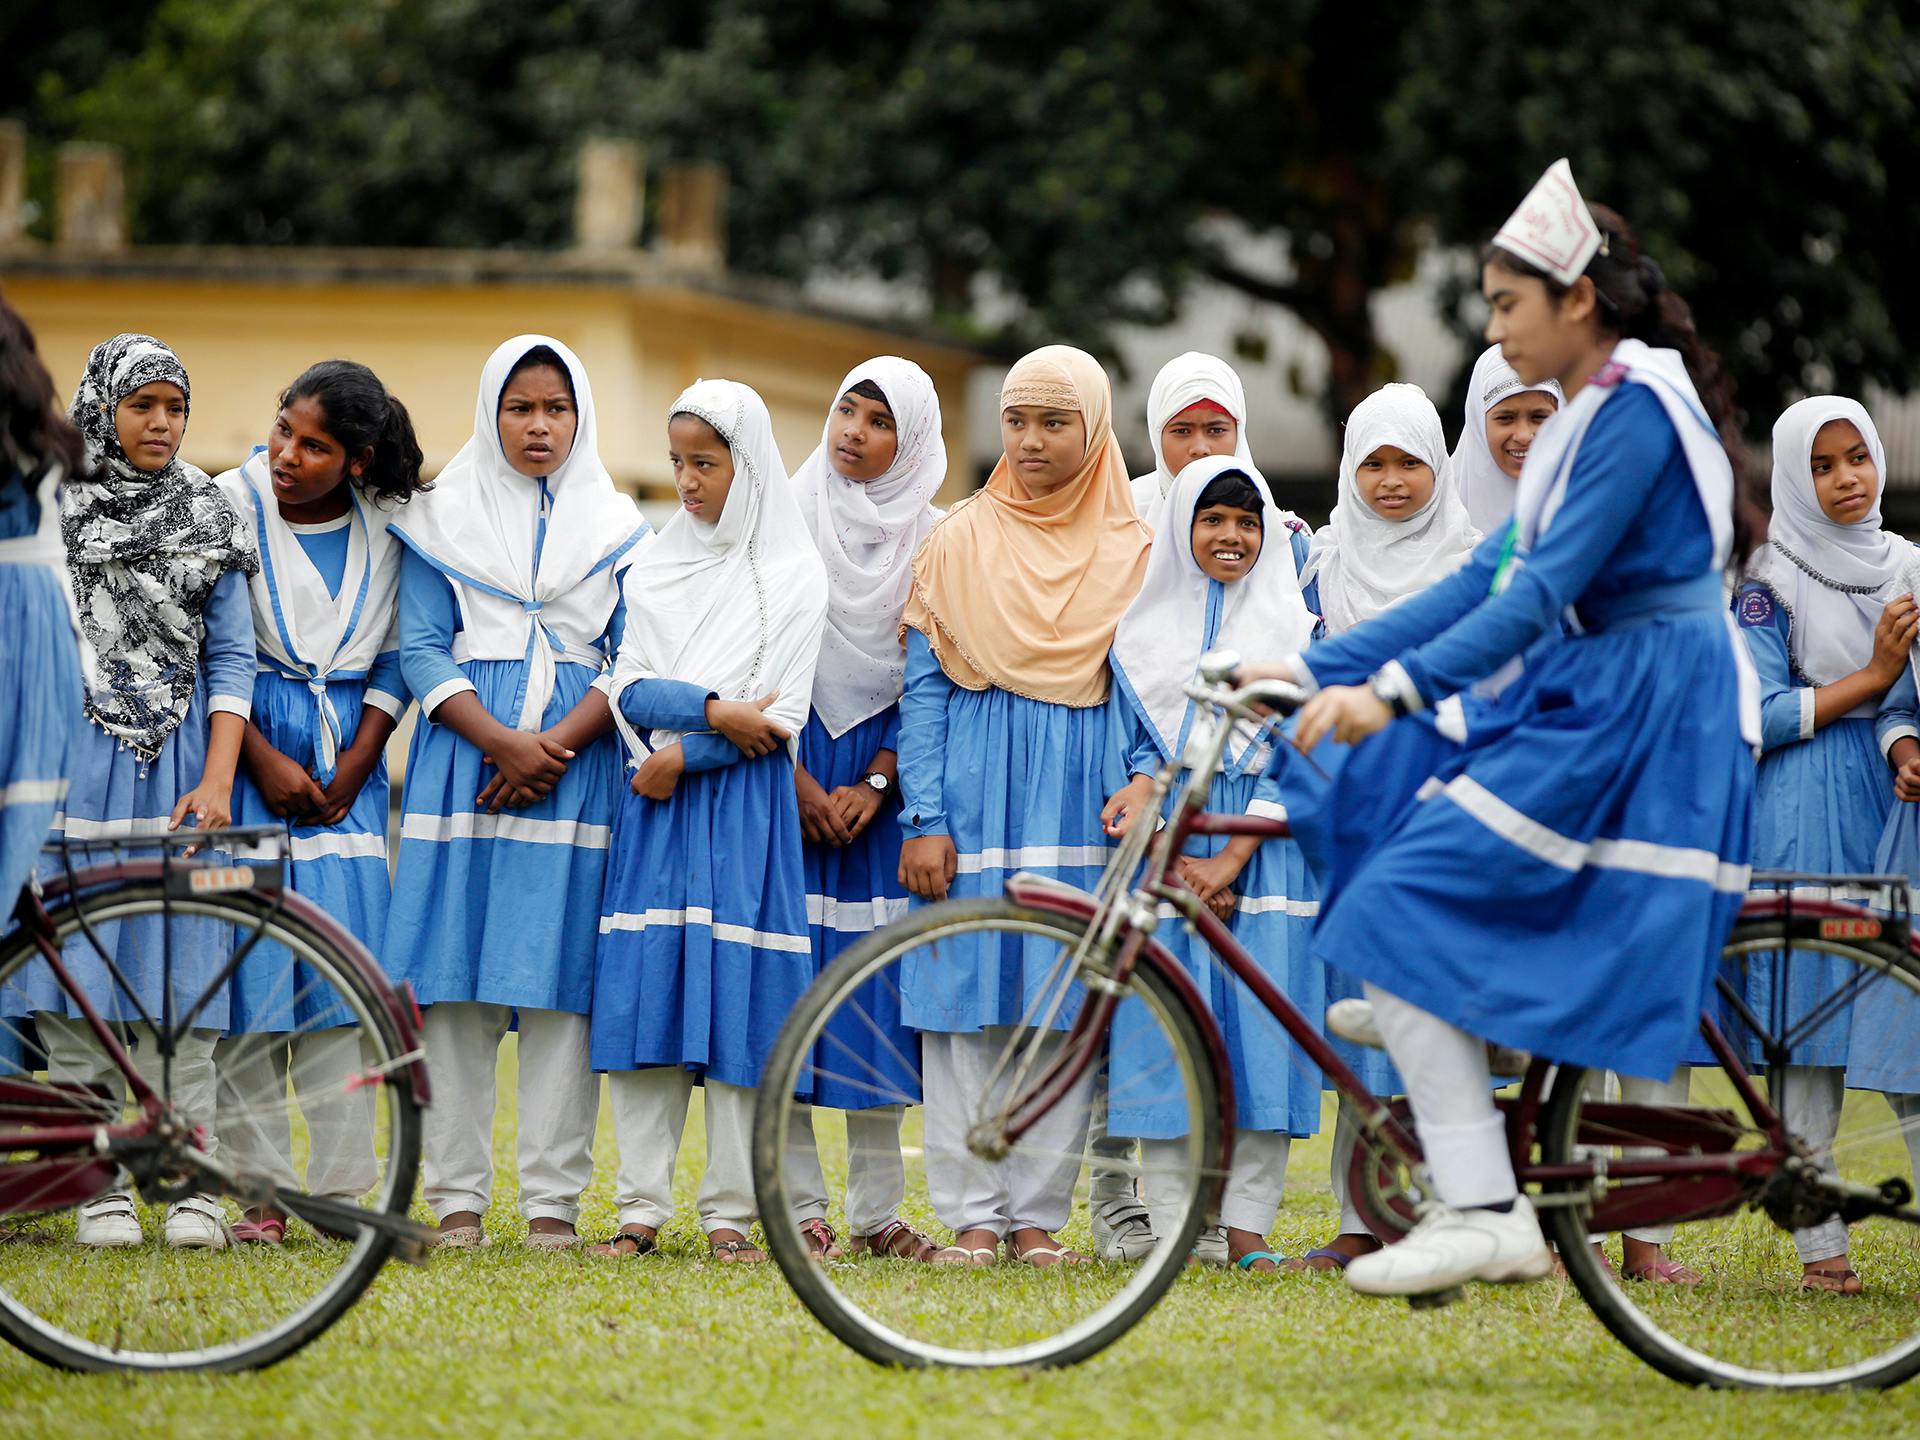 En grupp av flickor och unga kvinnor i likadana skoluniformer ser på när två unga kvinnor cyklar framför dom.